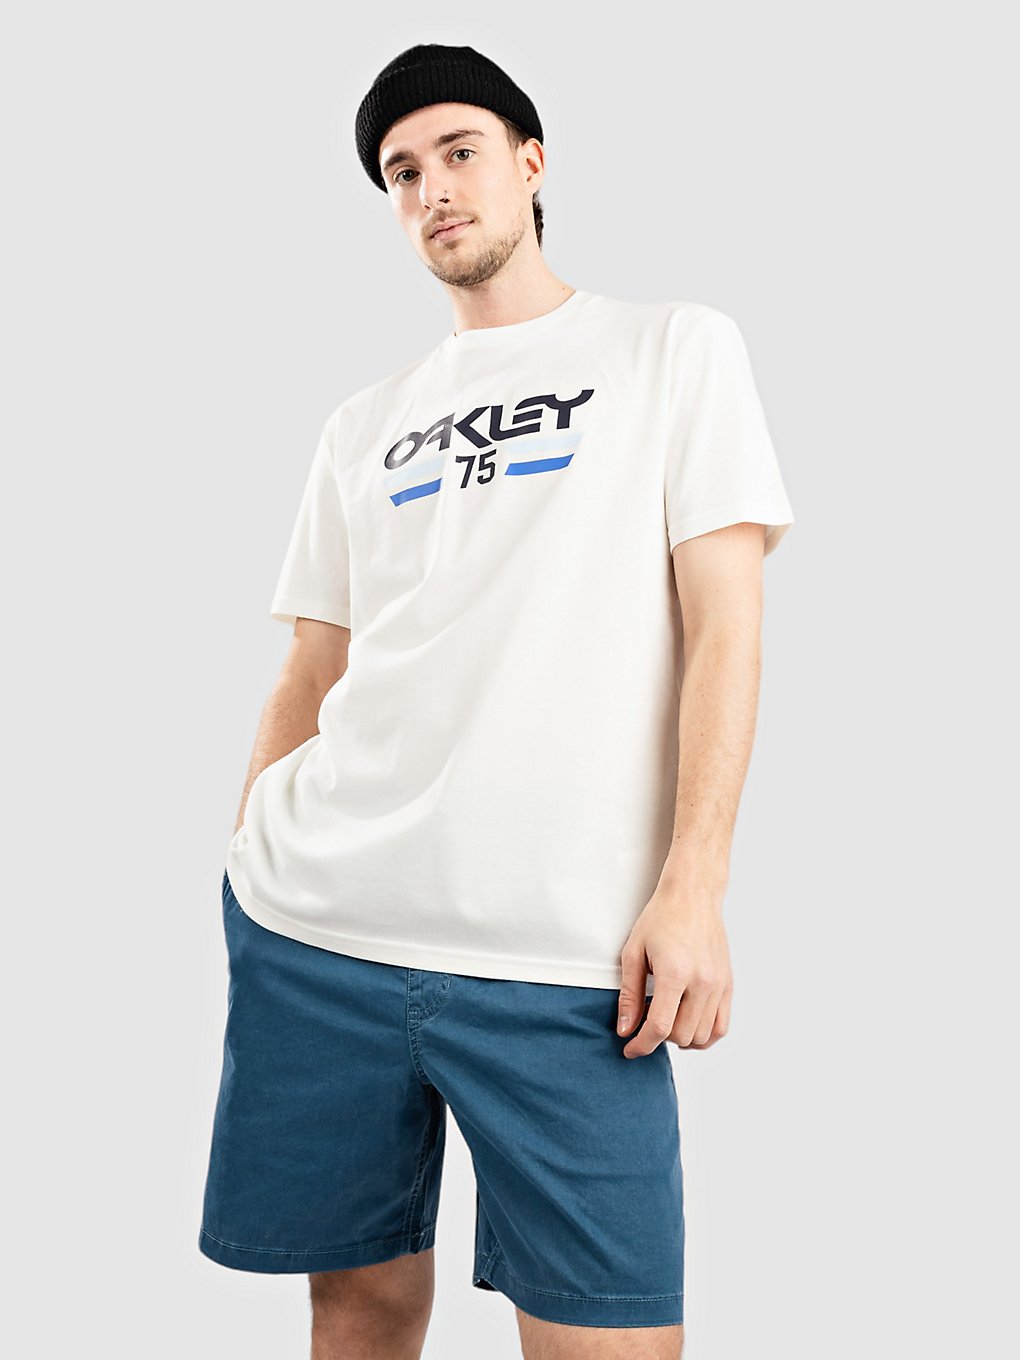 Oakley Vista 1975 T-Shirt white kaufen